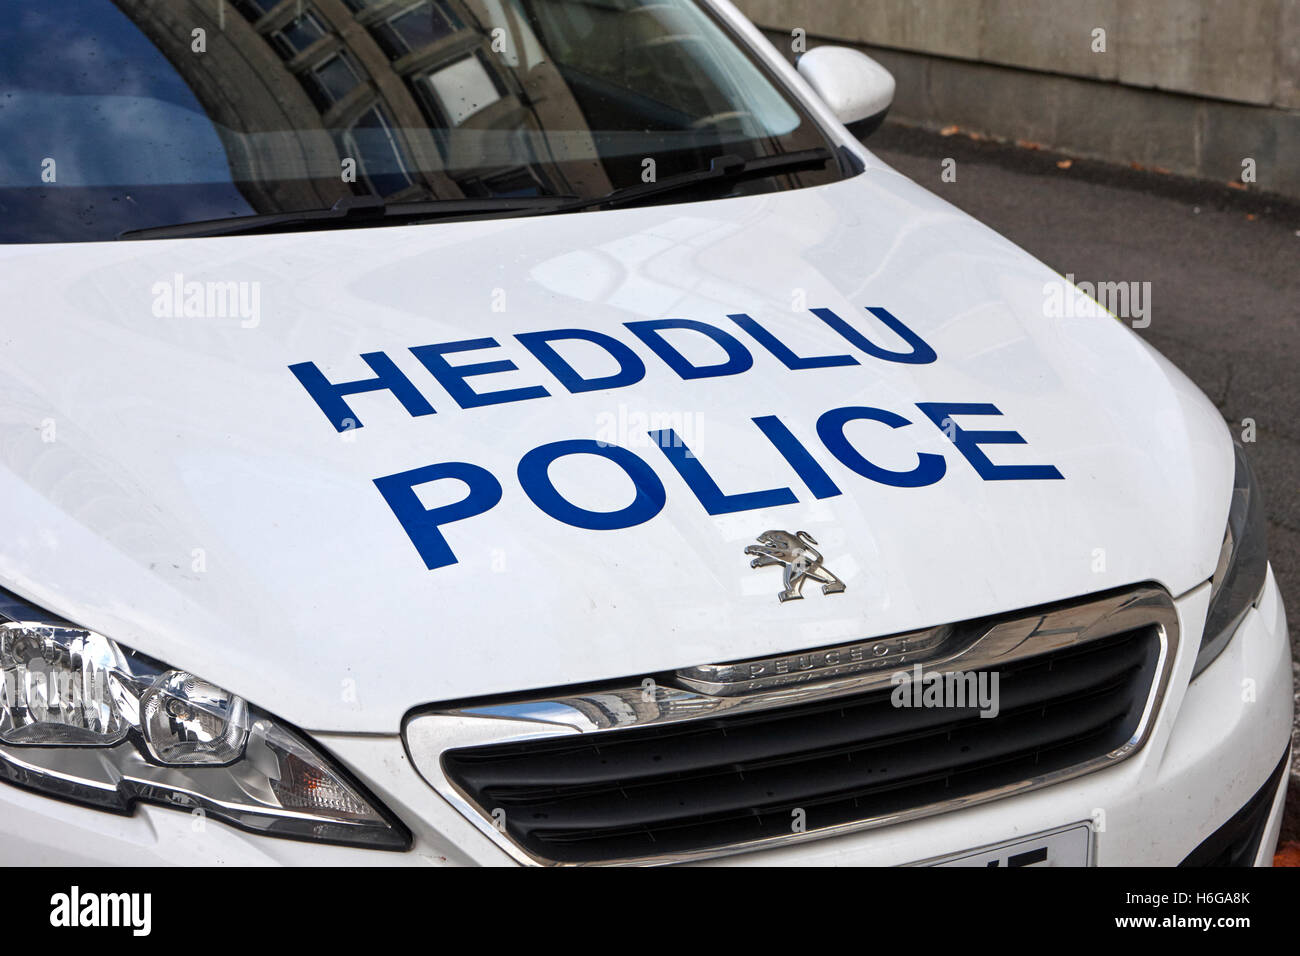 Südwales Polizei Heddlu zweisprachige Fahrzeug Lackierung Cardiff Wales Großbritannien Stockfoto